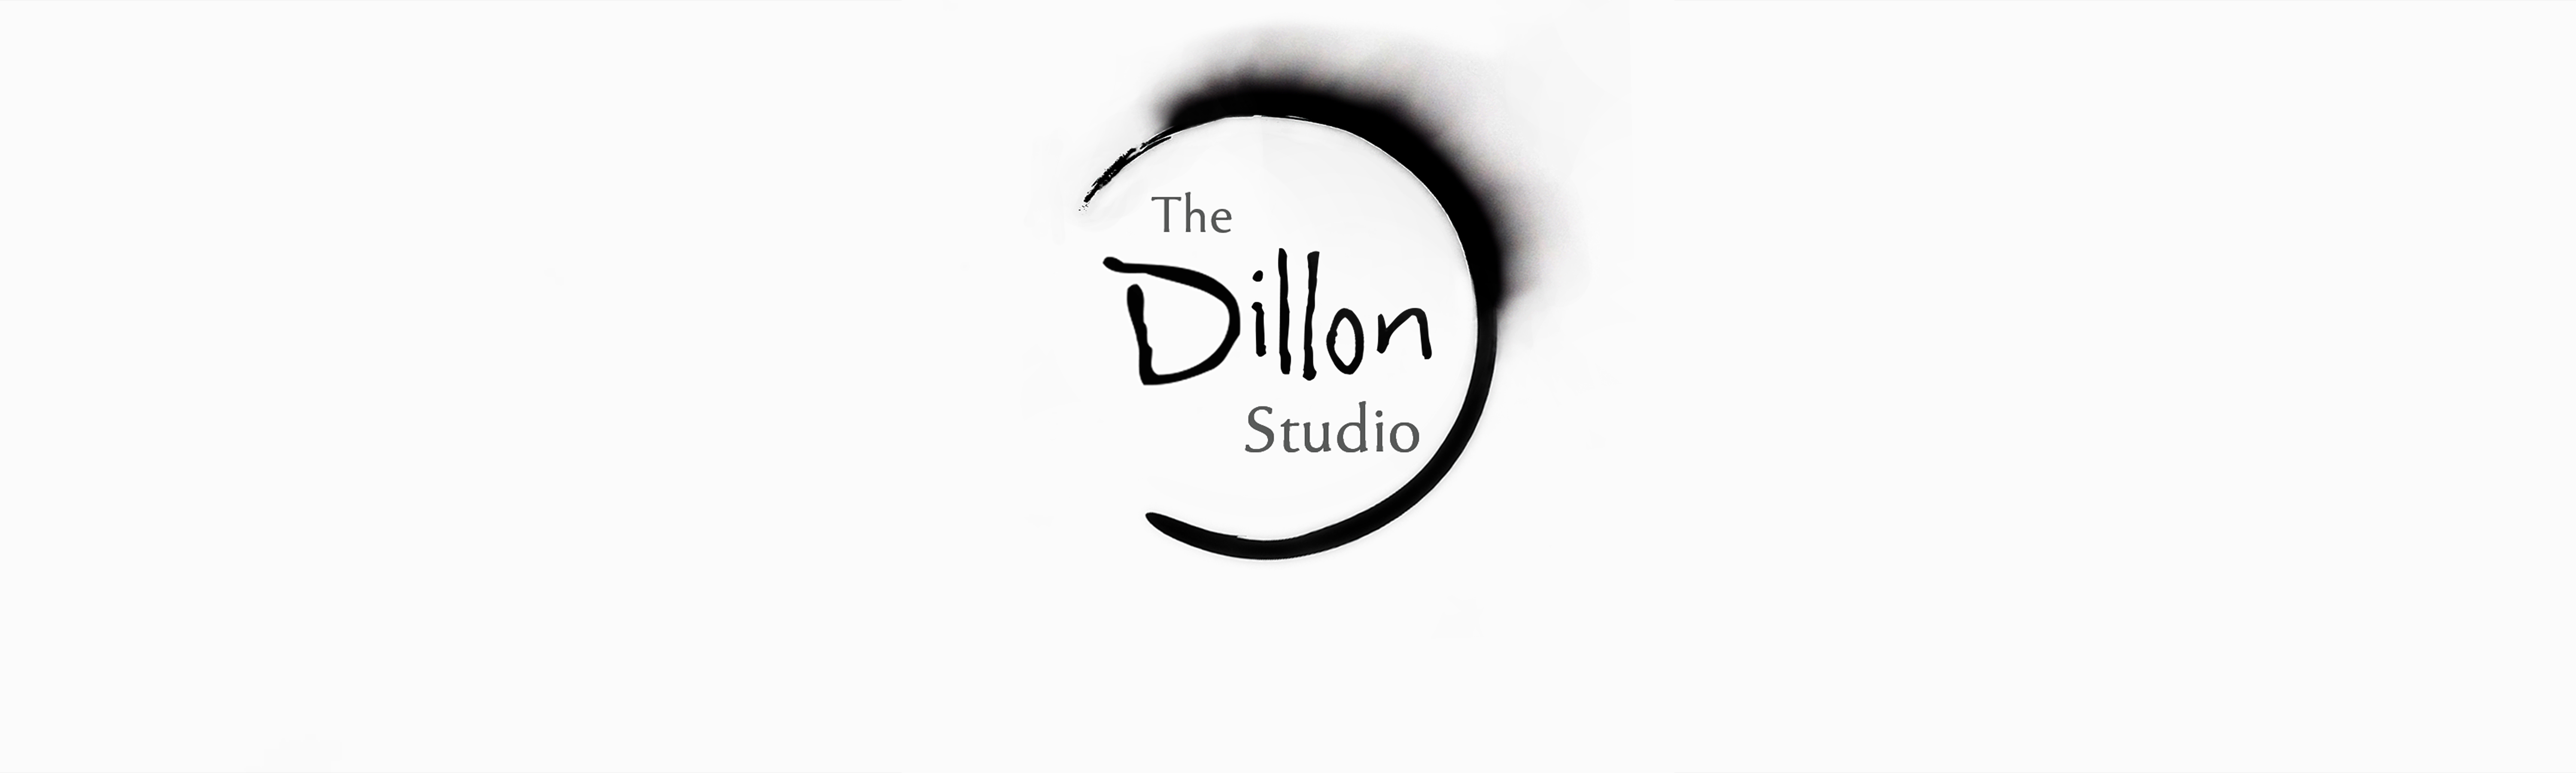 The Dillon Studio